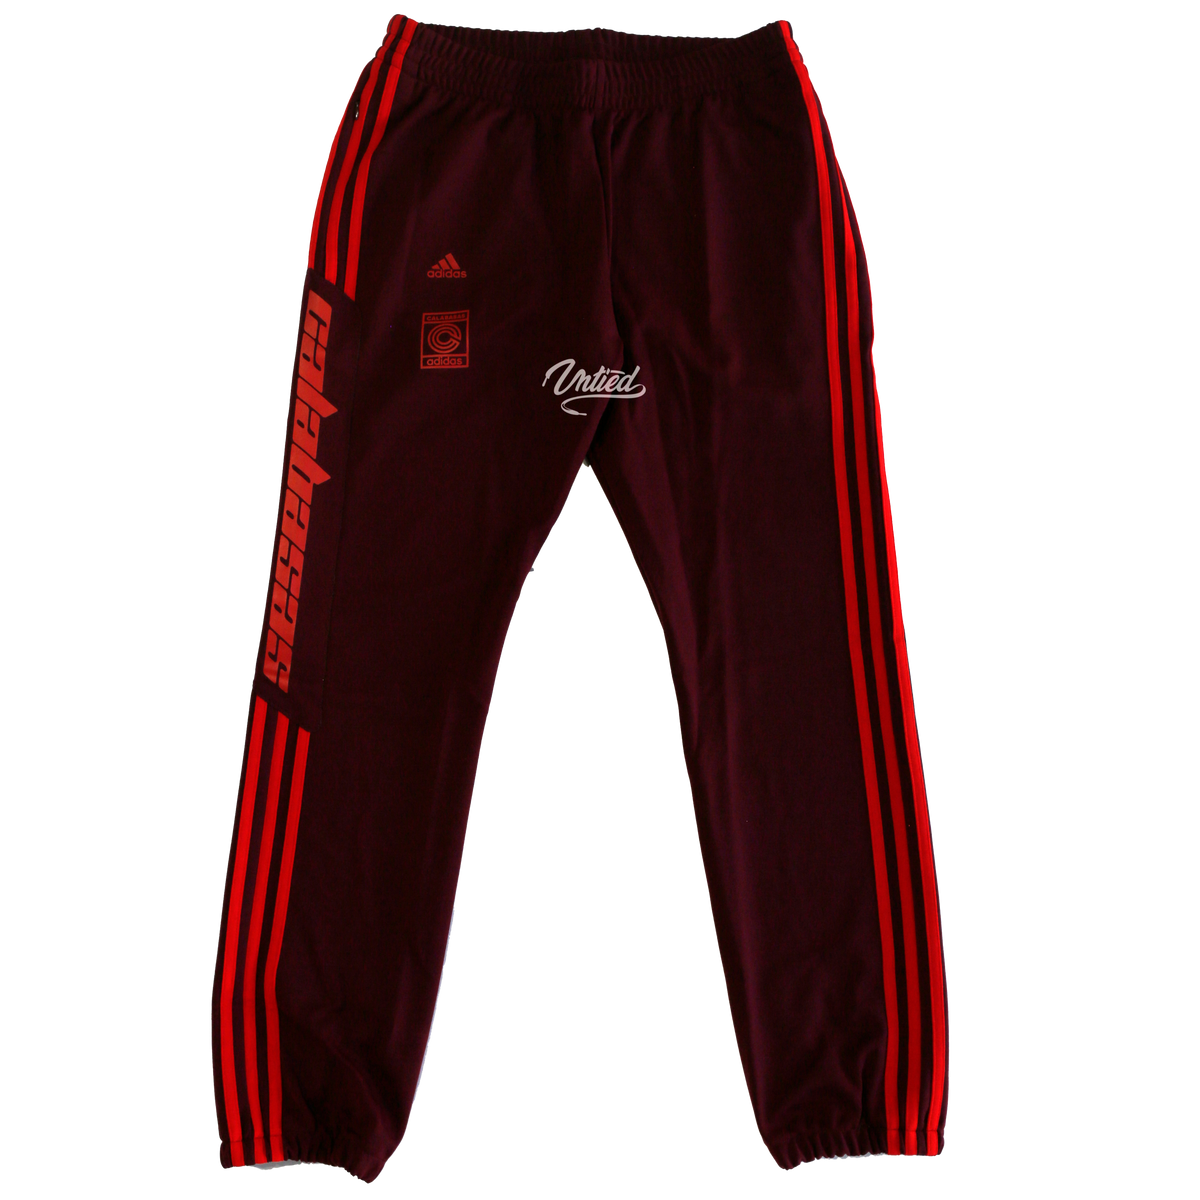 Adidas Yeezy Calabasas Track Pants "Maroon"